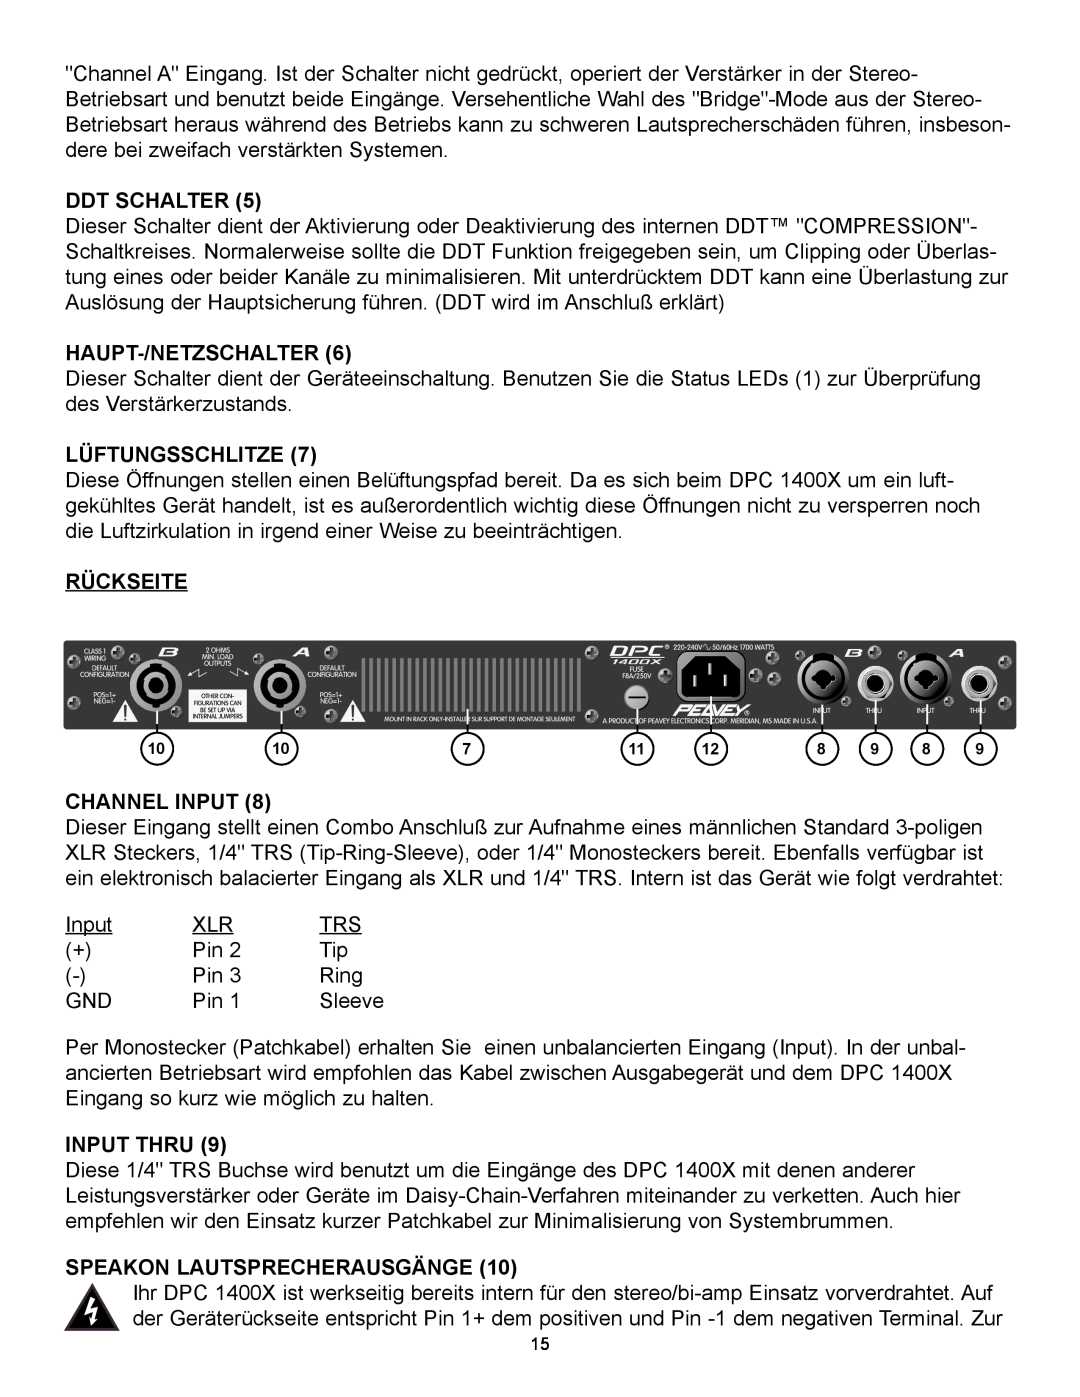 Peavey 1400X Ddt Schalter, Haupt-/Netzschalter, Lüftungsschlitze, Rückseite, Speakon Lautsprecherausgänge, Channel Input 